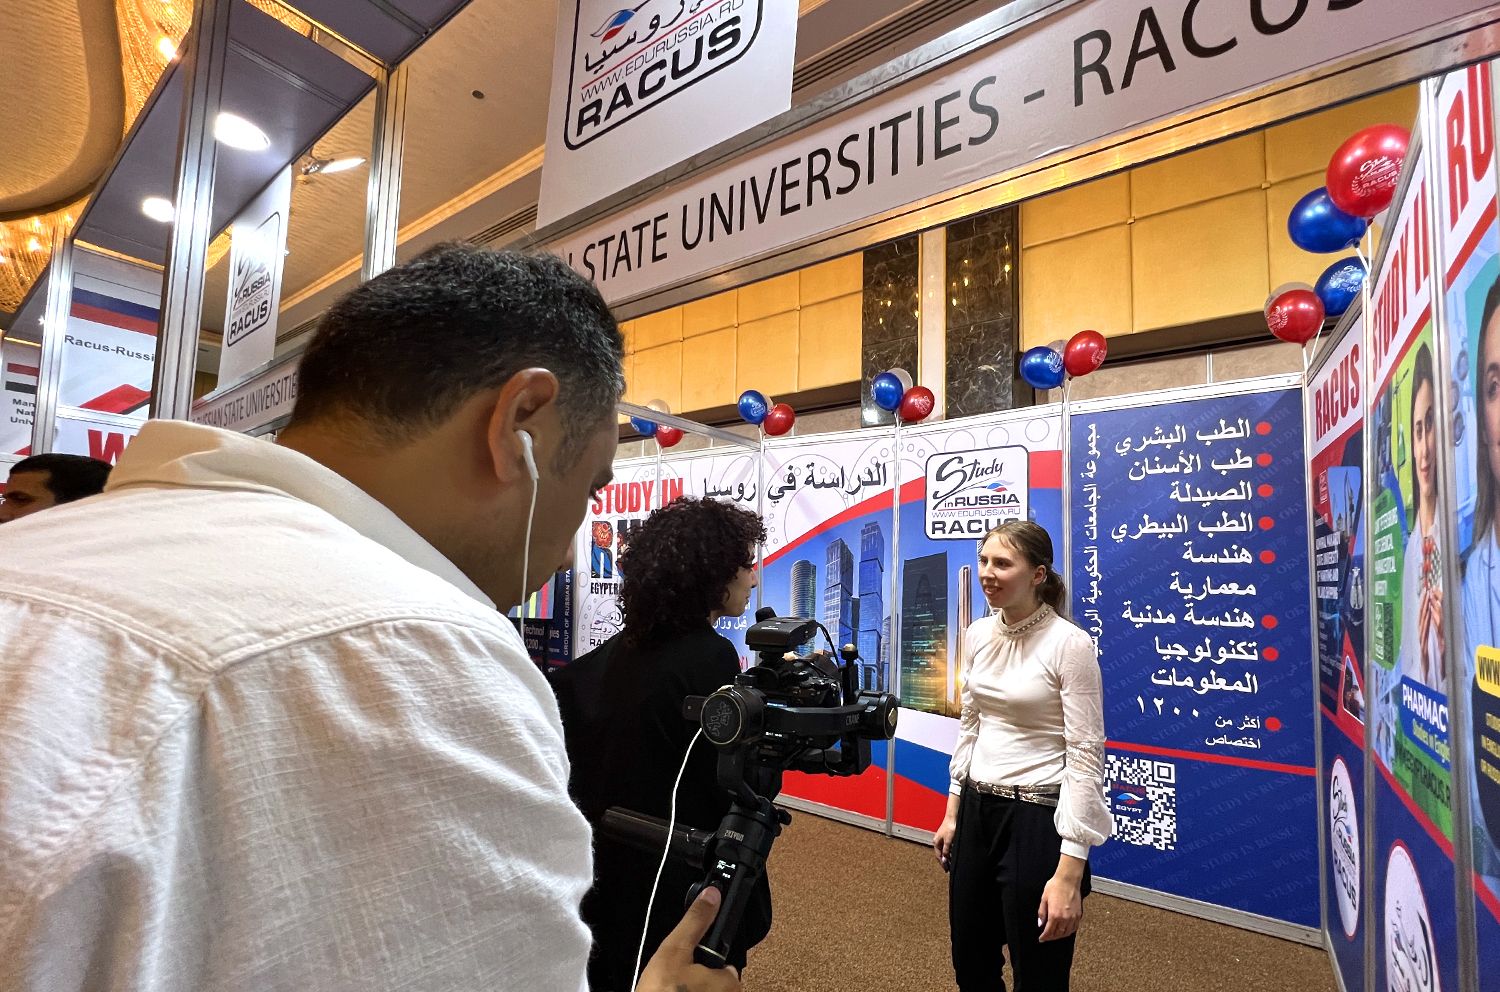 La manager pour les étudiants étrangers, Aya Bakh, a accordé une interview à la télévision égyptienne sur les études en Russie et le travail de l’organisation RACUS lors de l’exposition.